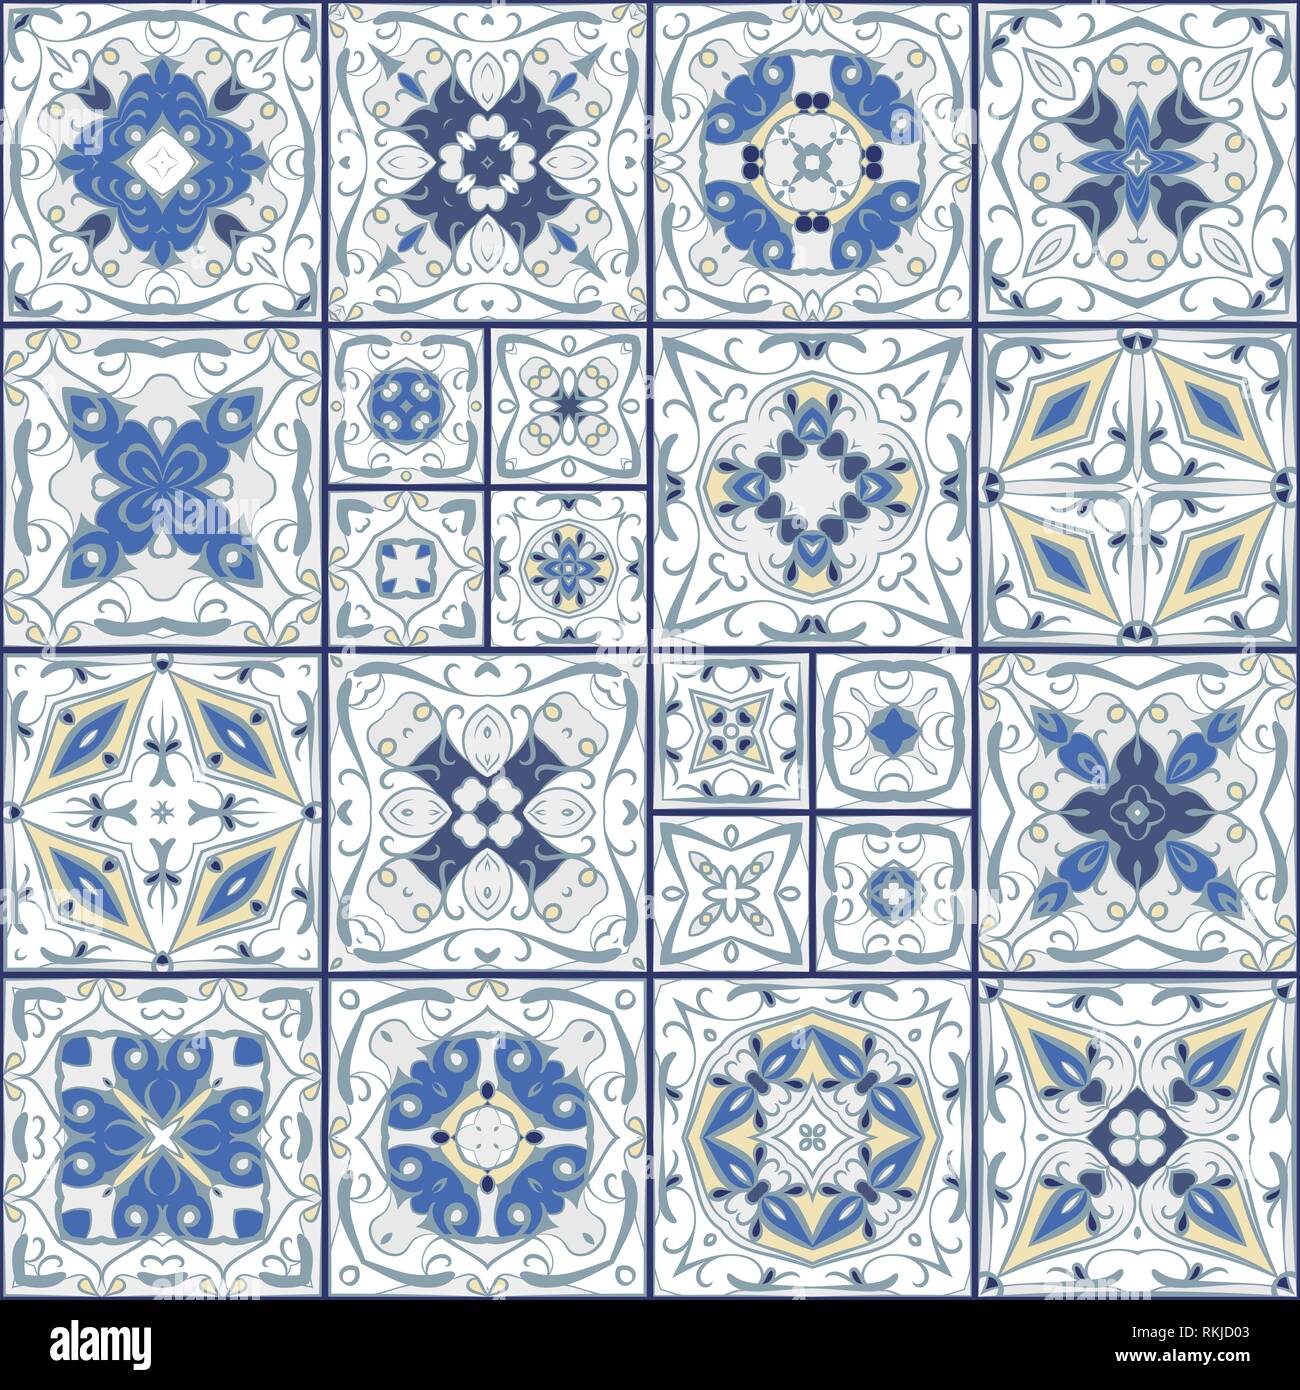 Eine Sammlung von keramischen Fliesen in Weiß und Blau. Eine Reihe von quadratischen Muster im ethnischen Stil. Vector Illustration. Stock Vektor